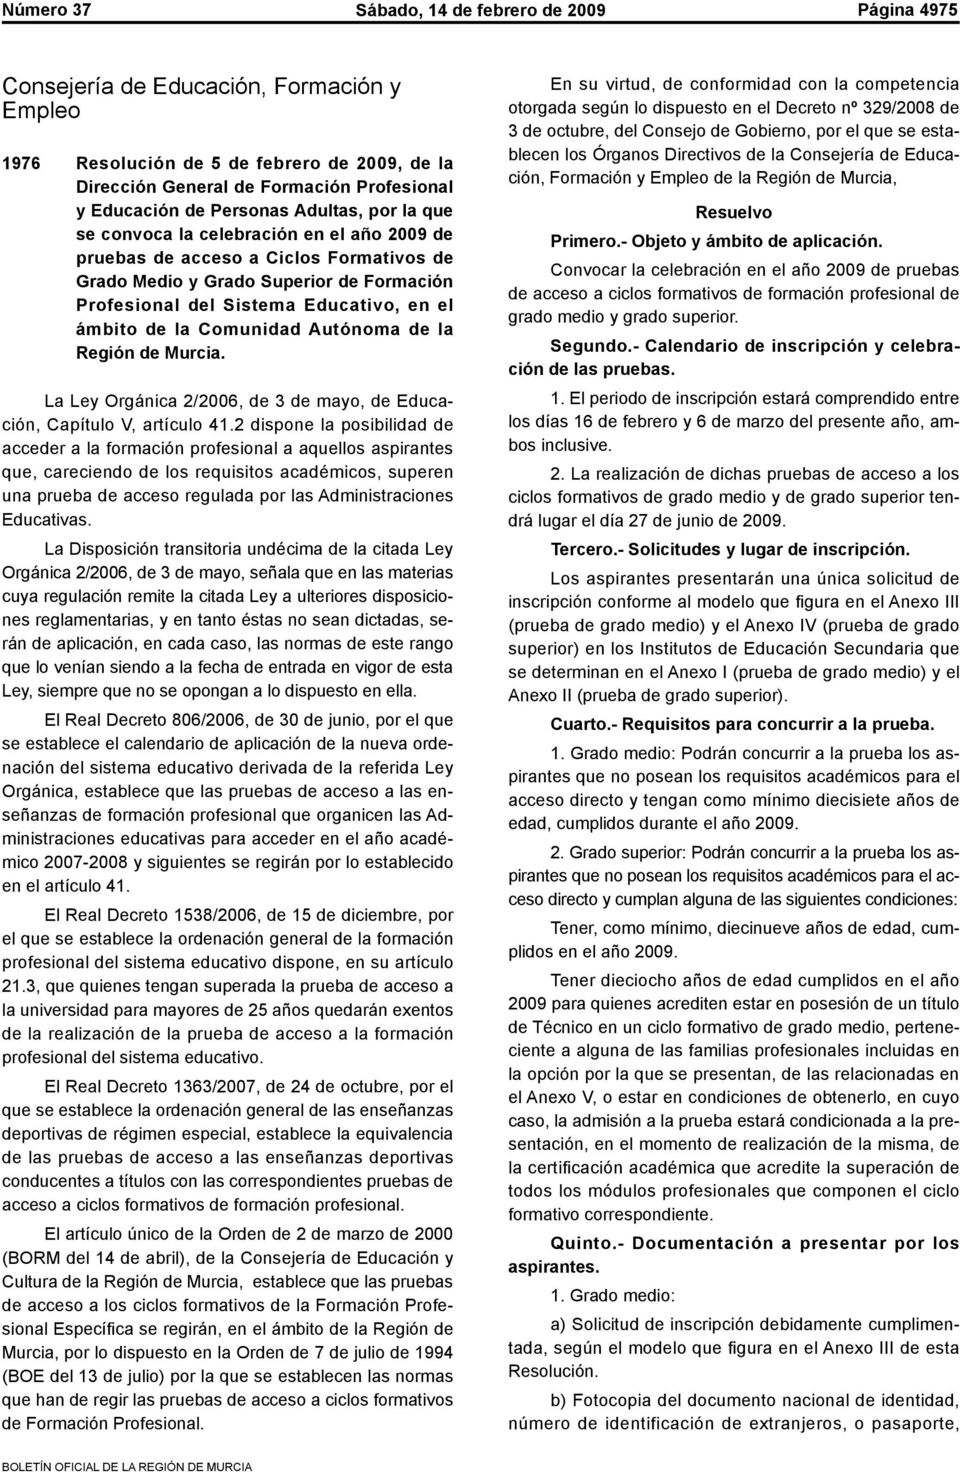 ámbito de la Comunidad Autónoma de la Región de Murcia. La Ley Orgánica 2/2006, de 3 de mayo, de Educación, Capítulo V, artículo 41.